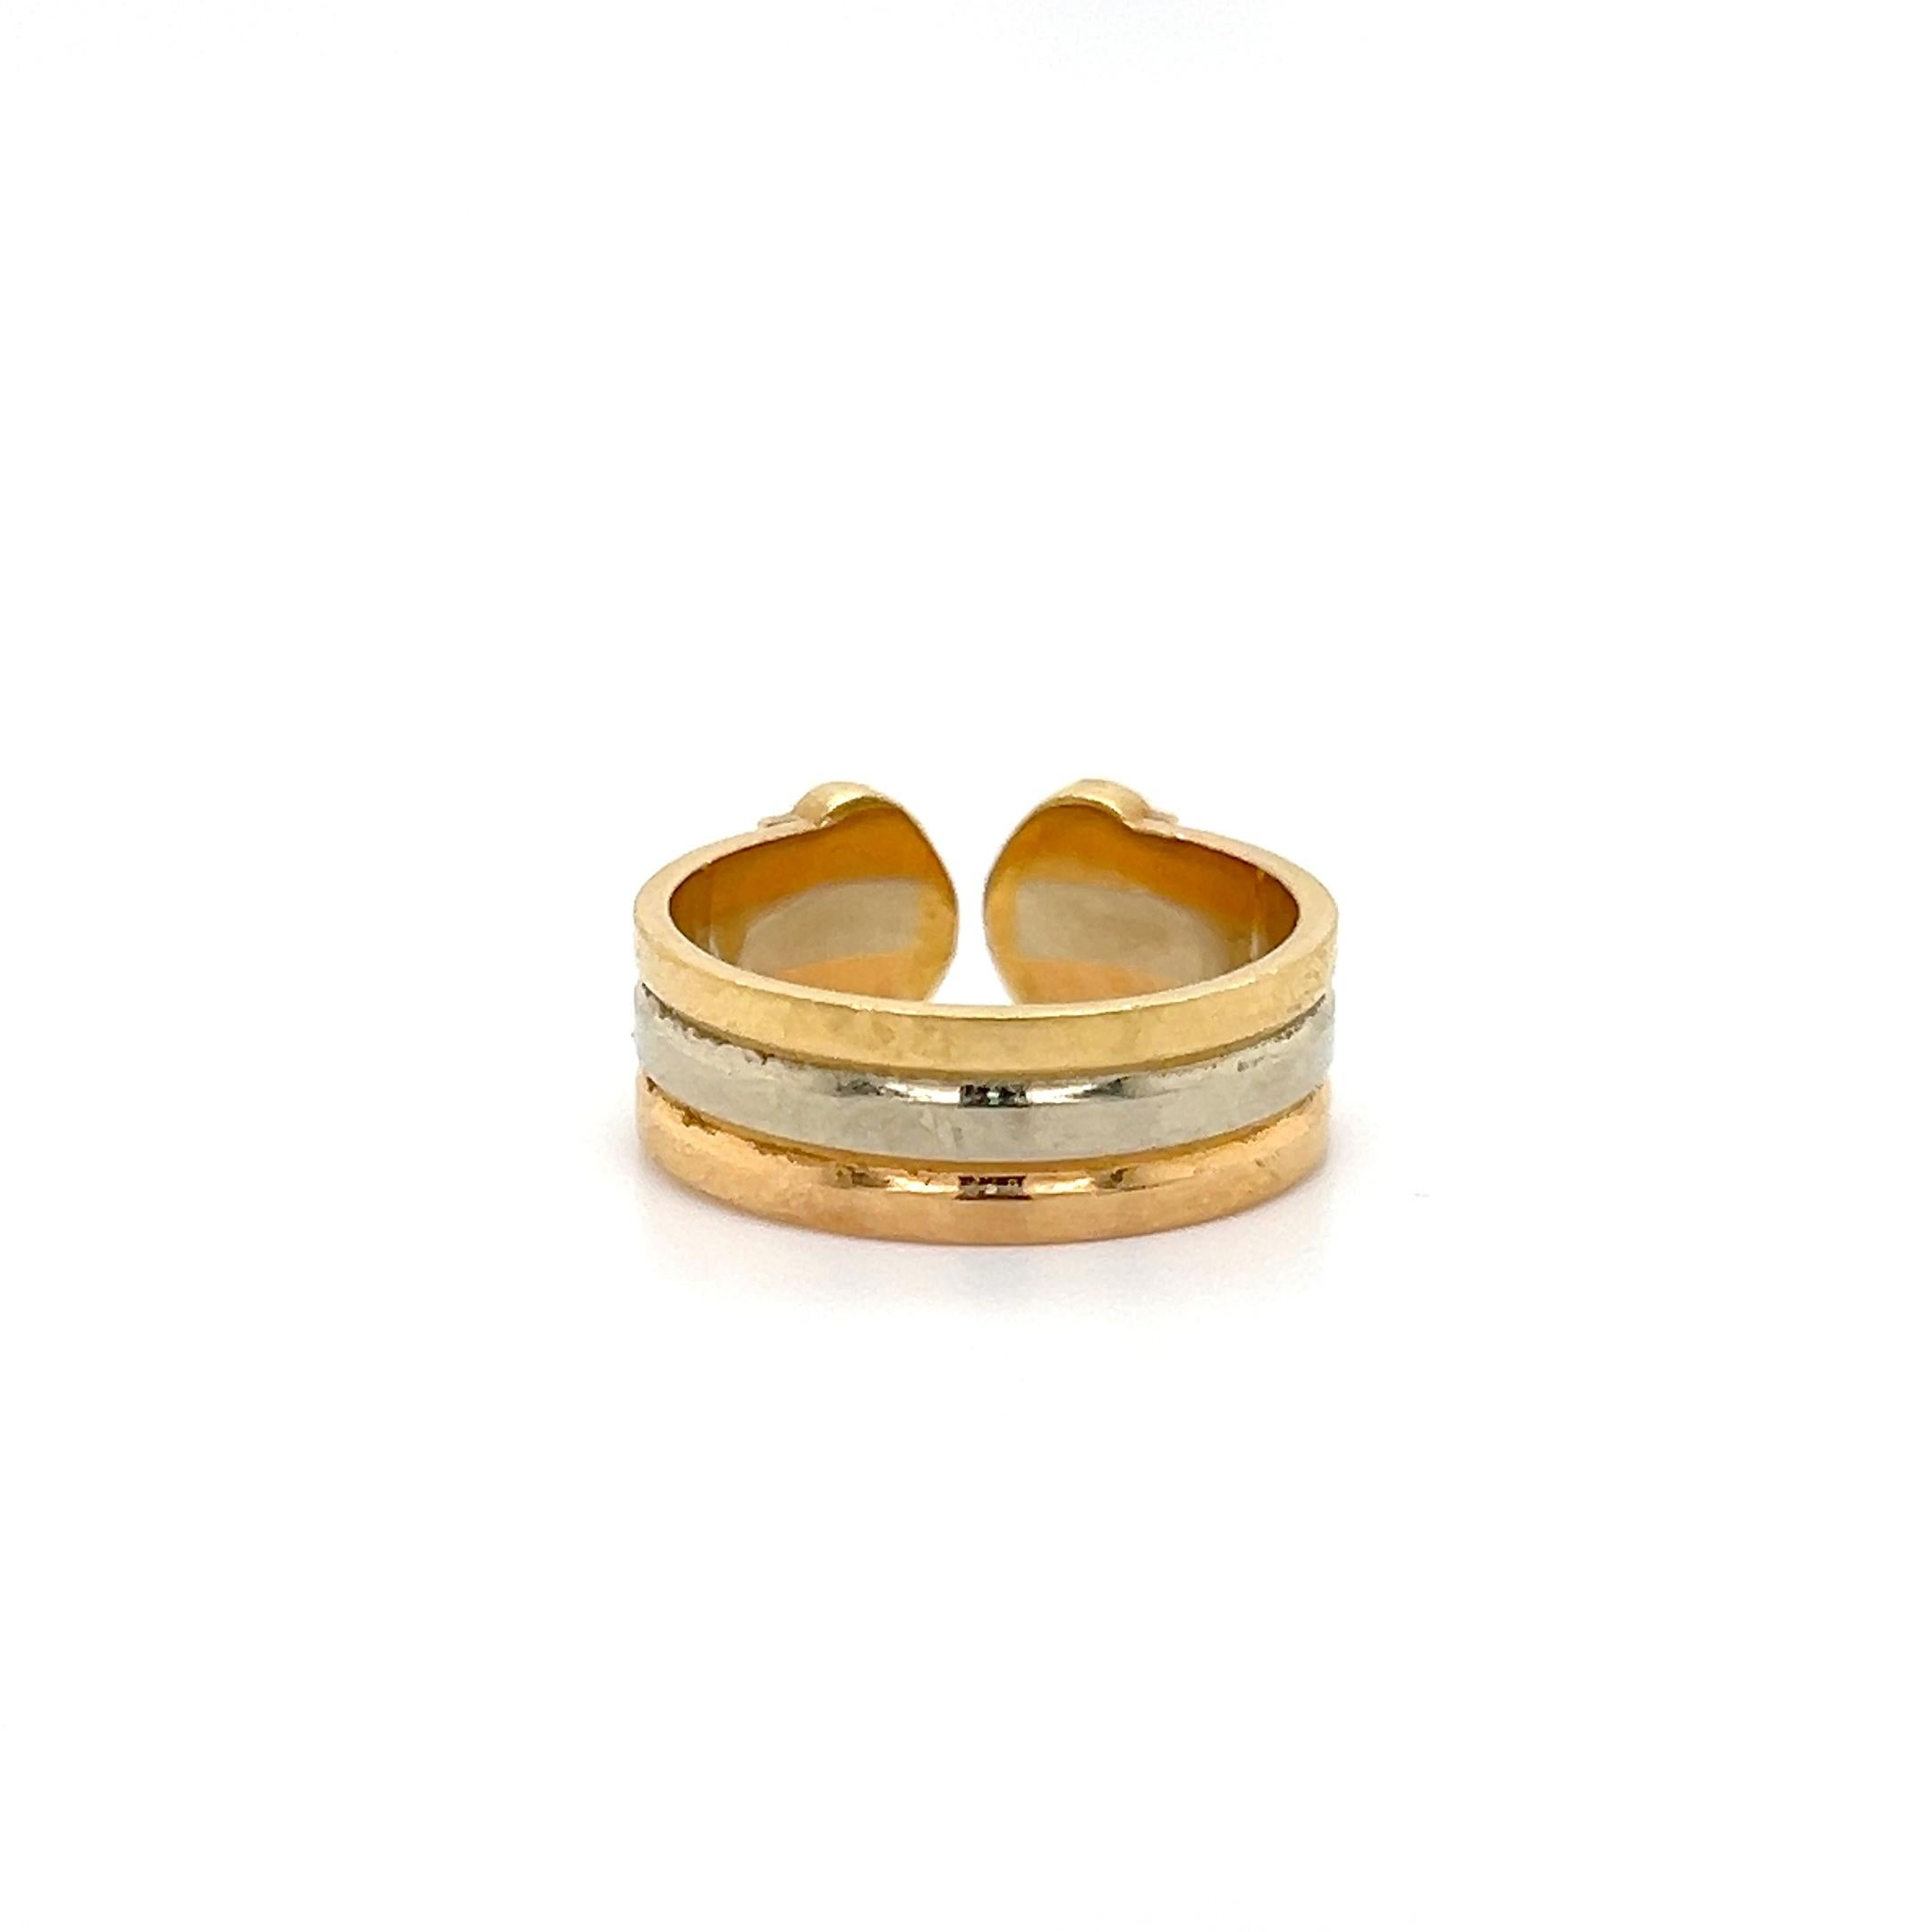 Zeitloses Design des famosen Designers Cartier. Der Ring ist aus 18 Karat Gold gefertigt und hat ein dreifarbiges Design. Reihen aus Gelb-, Weiß- und Roségold führen zu einem durchbrochenen Doppel-C-Design. Der Ring ist eine Größe 48 oder 4,5, der